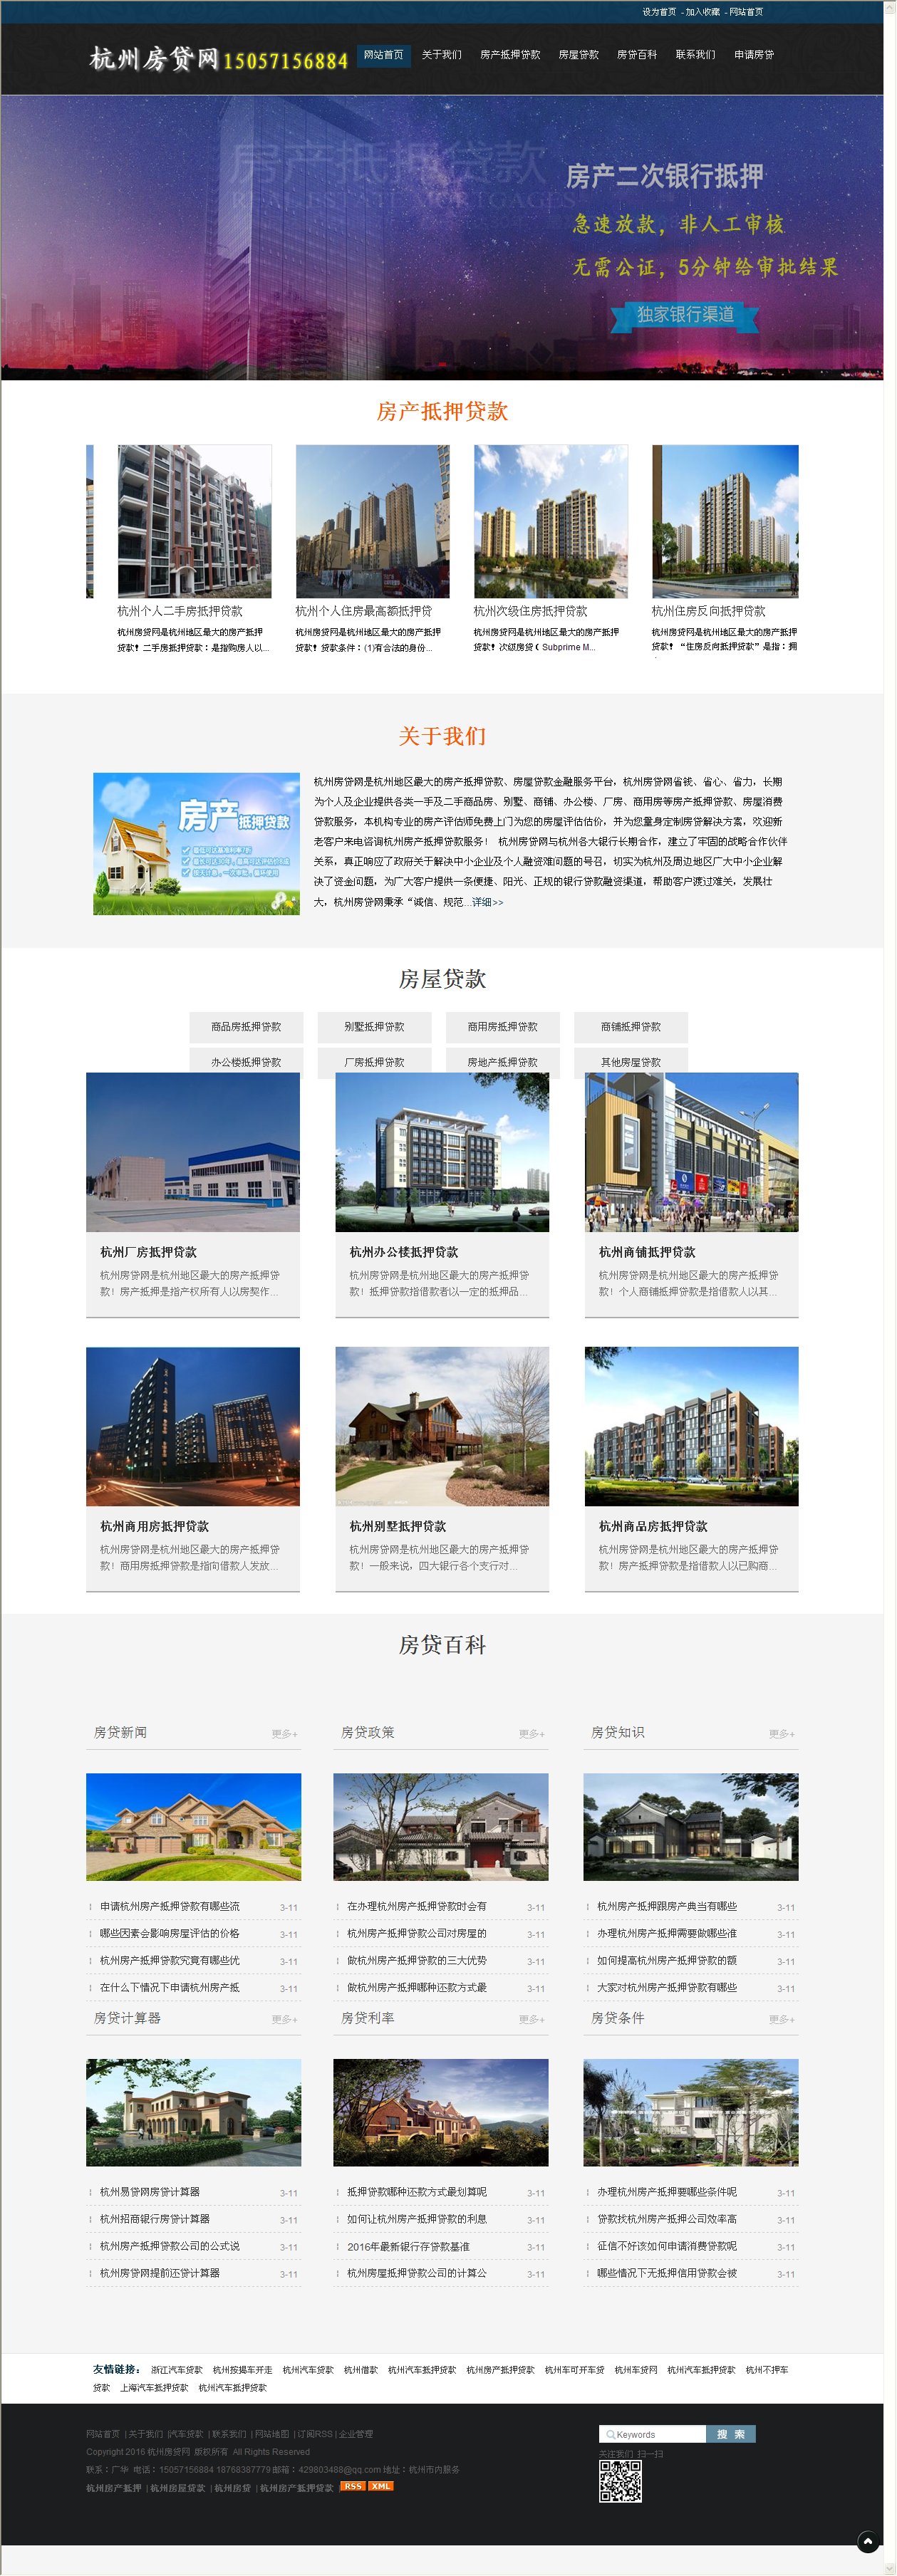 WAP13杭州房贷网